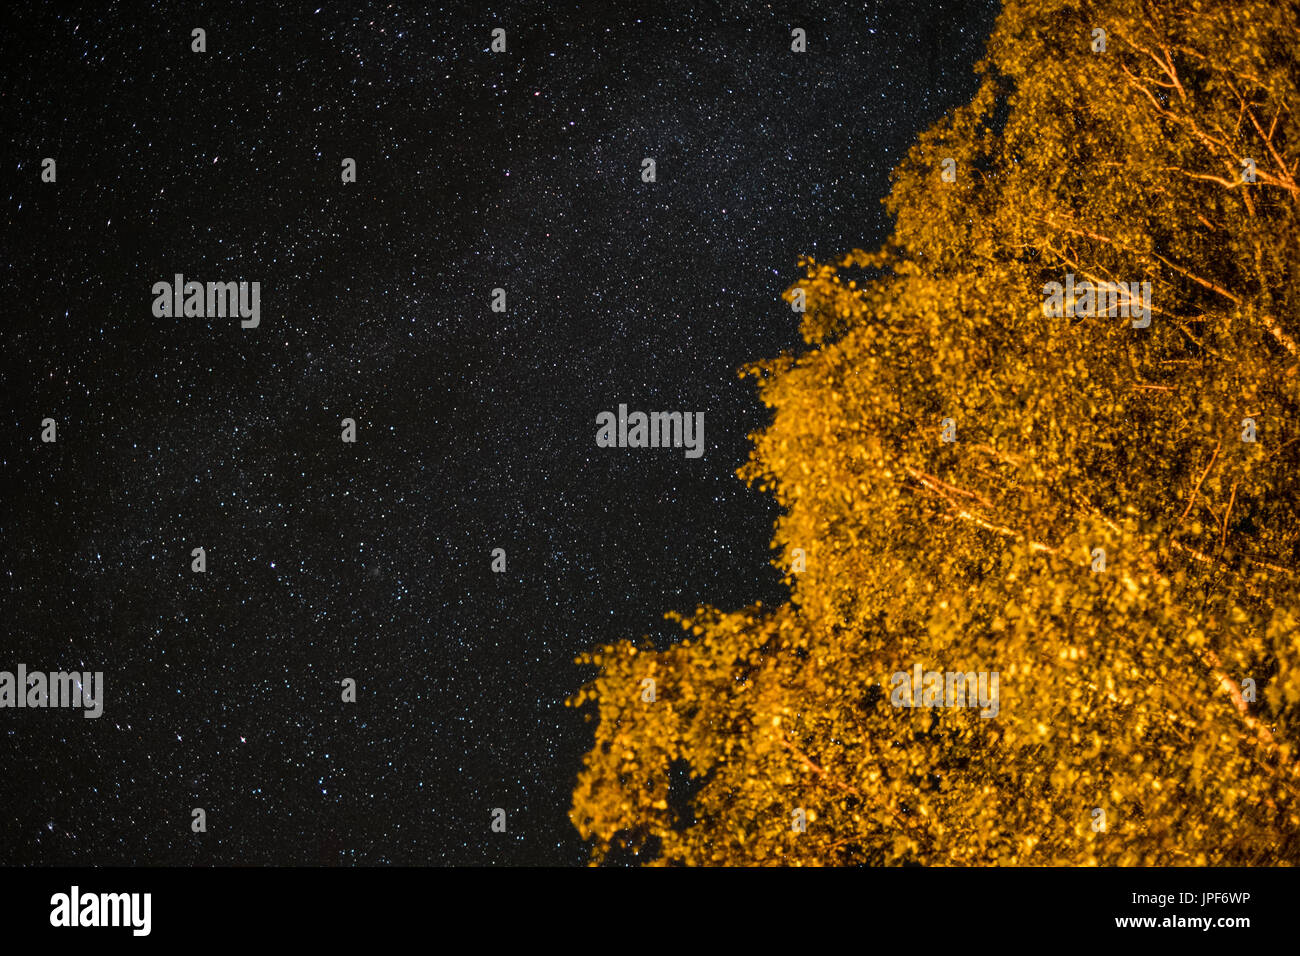 Himmel in der Nacht - Landschaft in der Nacht mit klarem Himmel und vielen stars Stockfoto